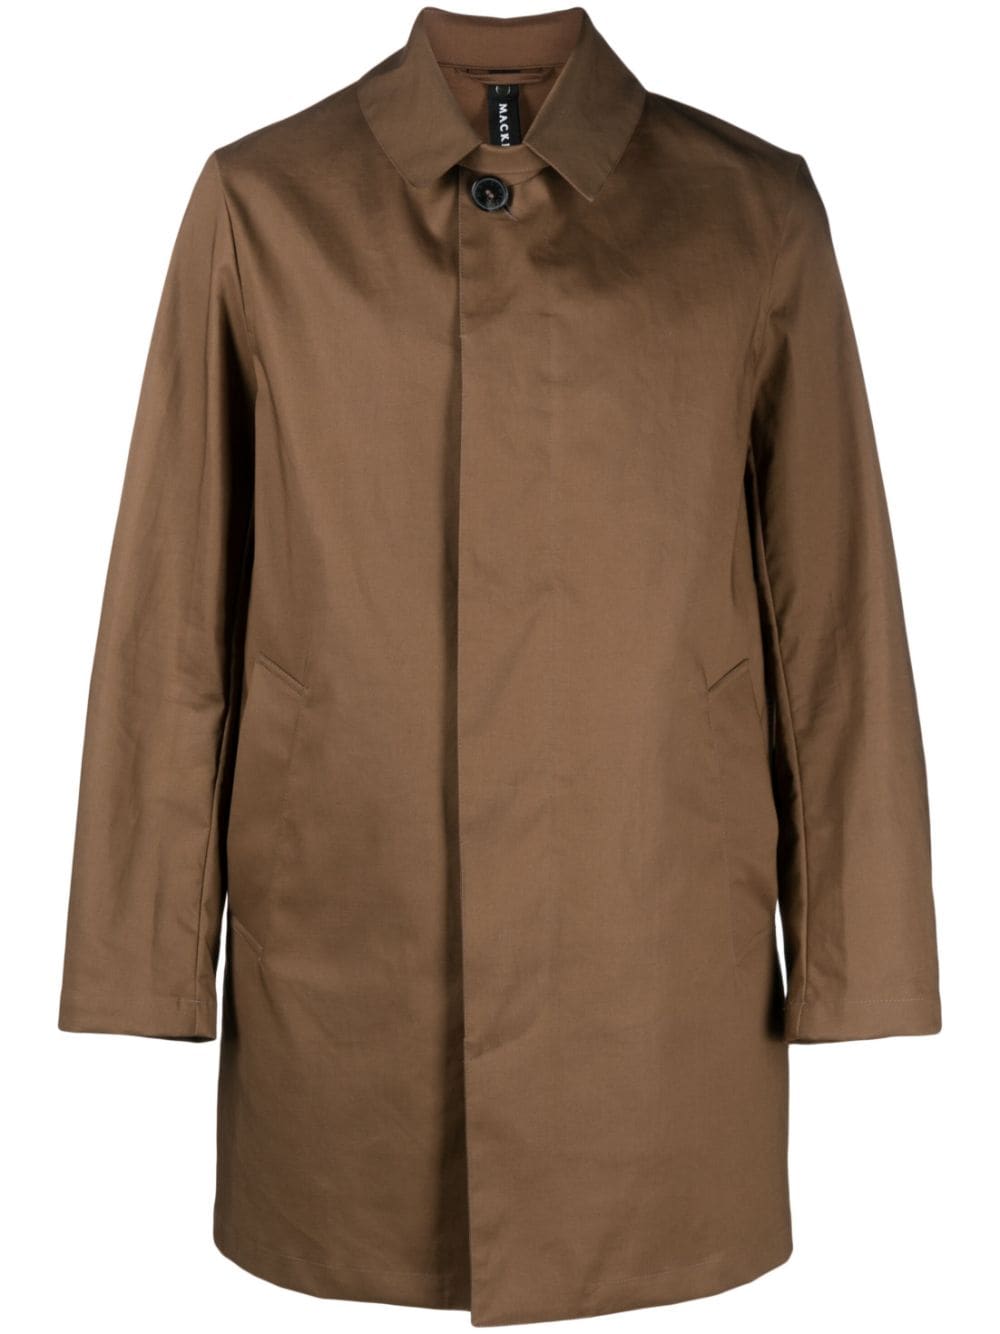 Cambridge button-up cotton raincoat